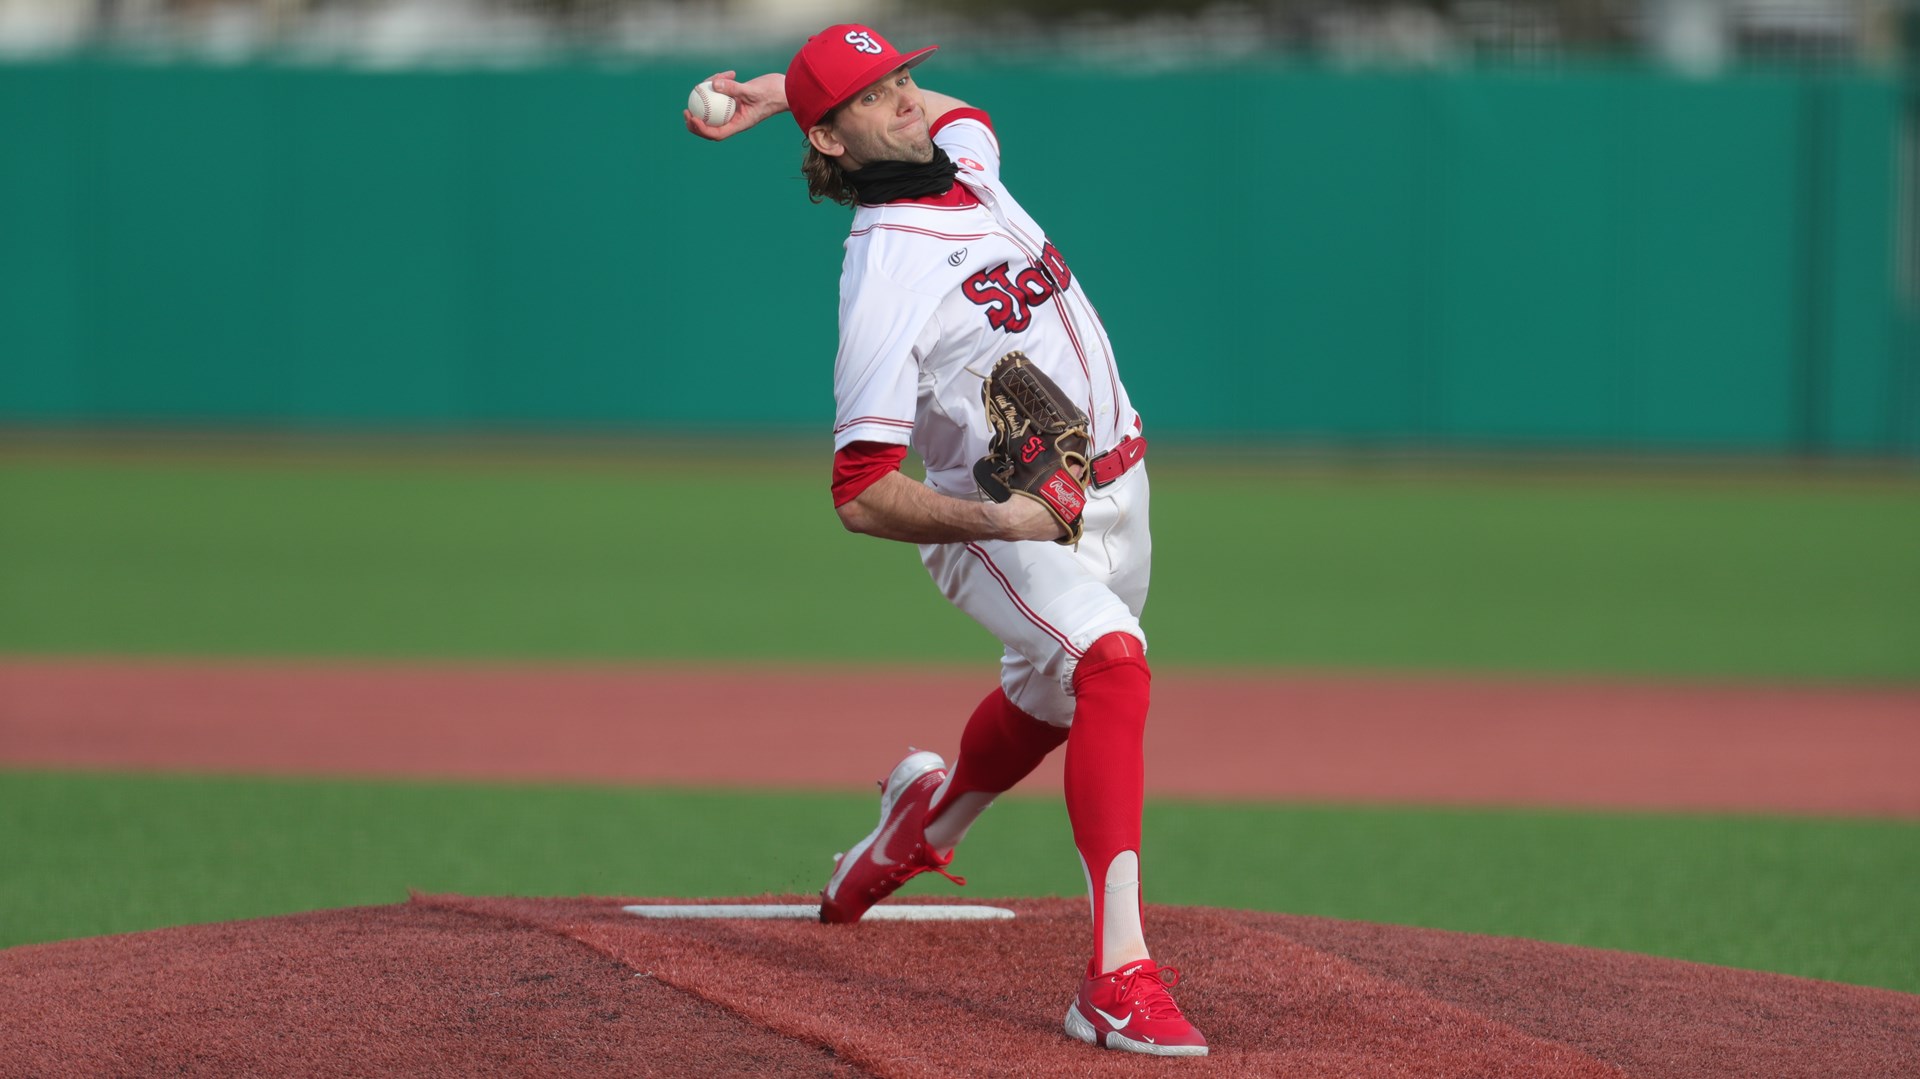 St. John’s University athlete selected in the Major League Baseball